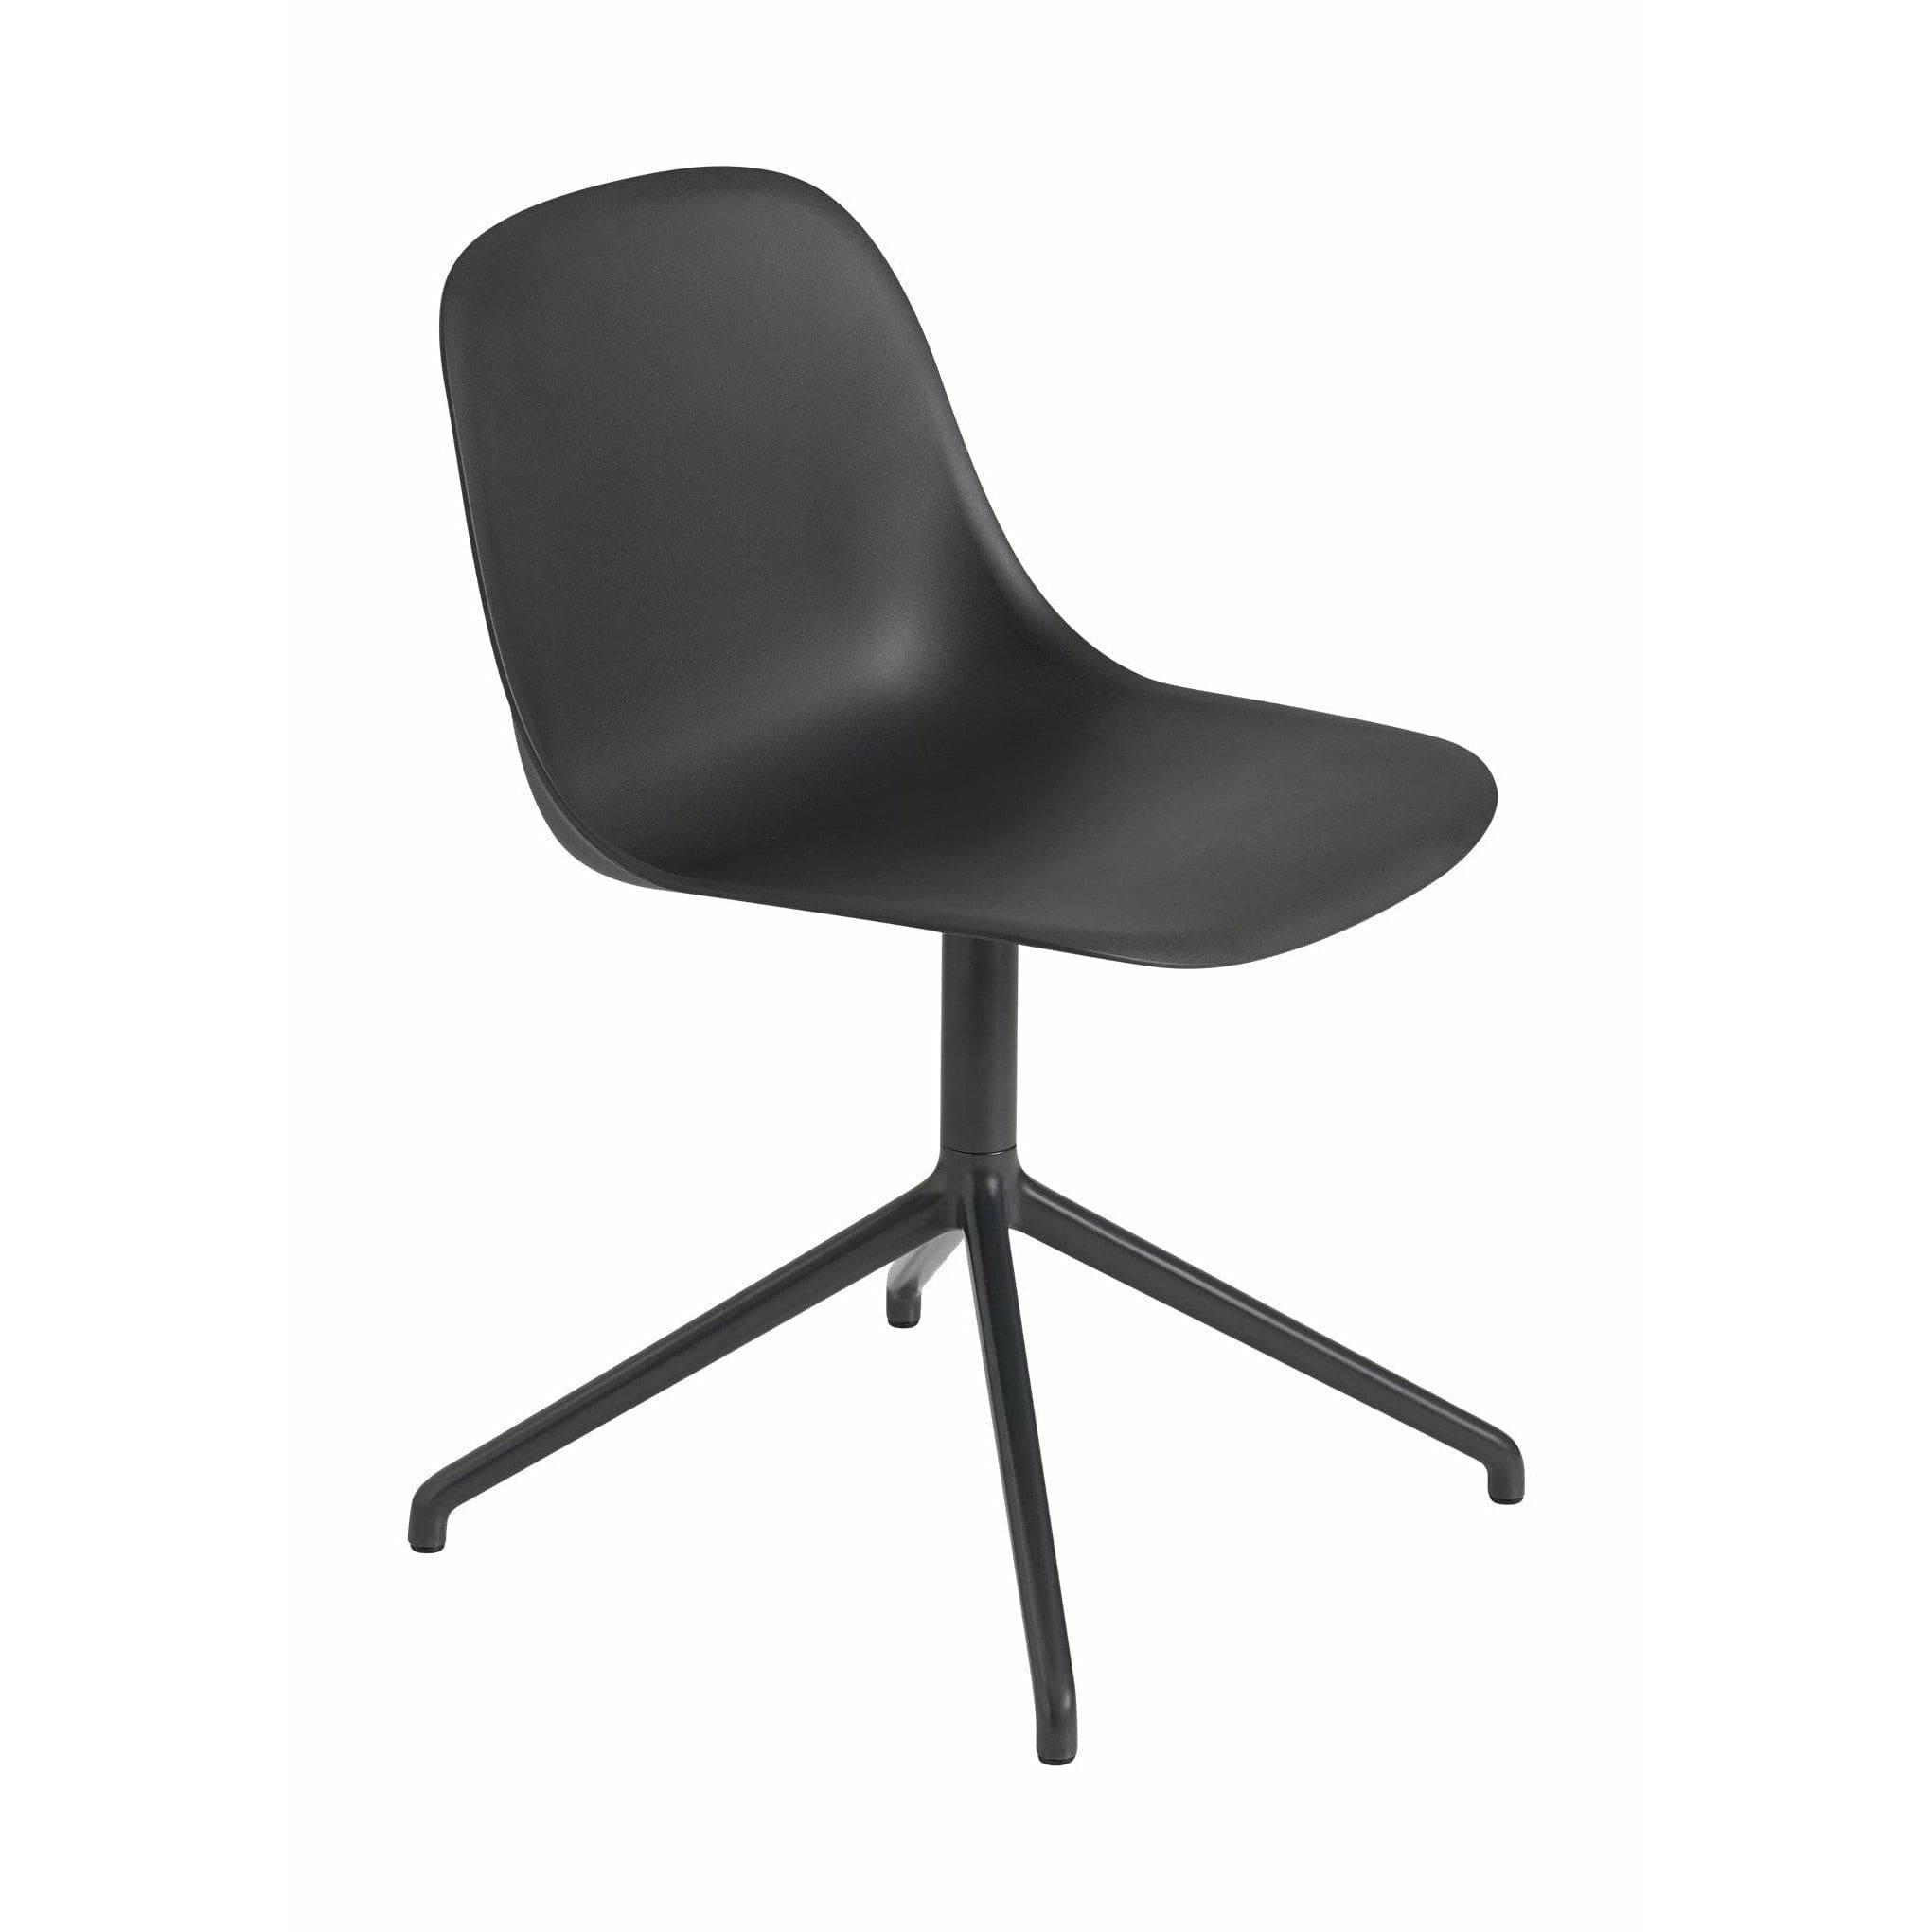 Muuto Chaise latéral en fibre en plastique recyclé pivotant, noir / noir